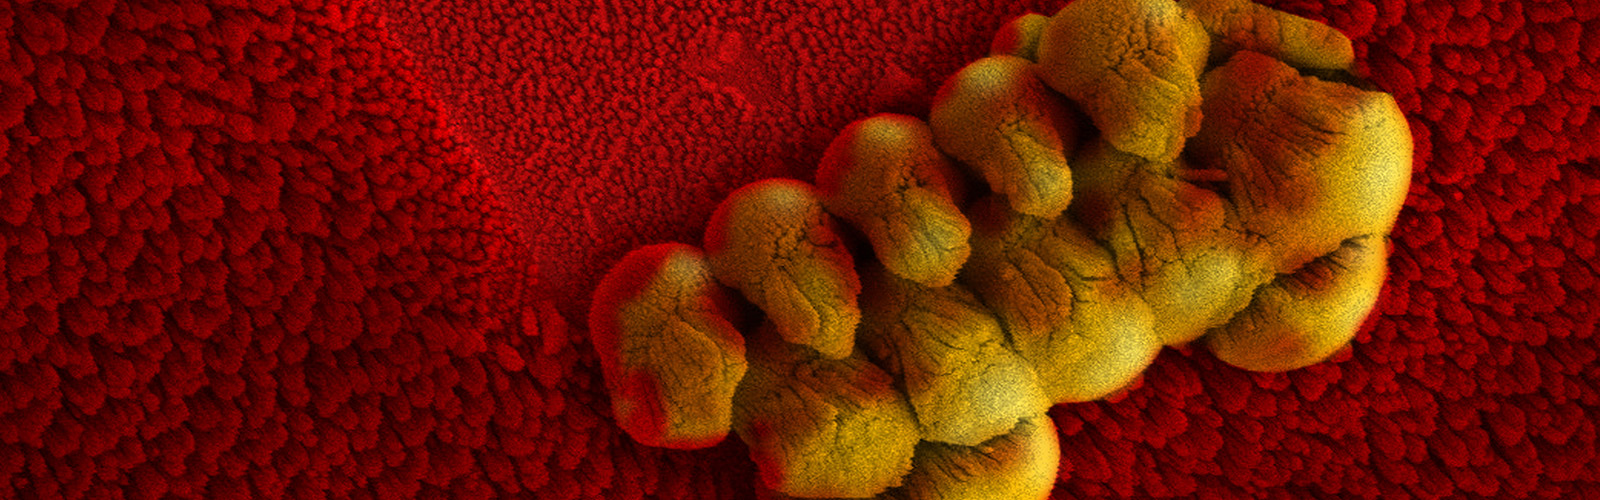 microscopic image of nanotechnology